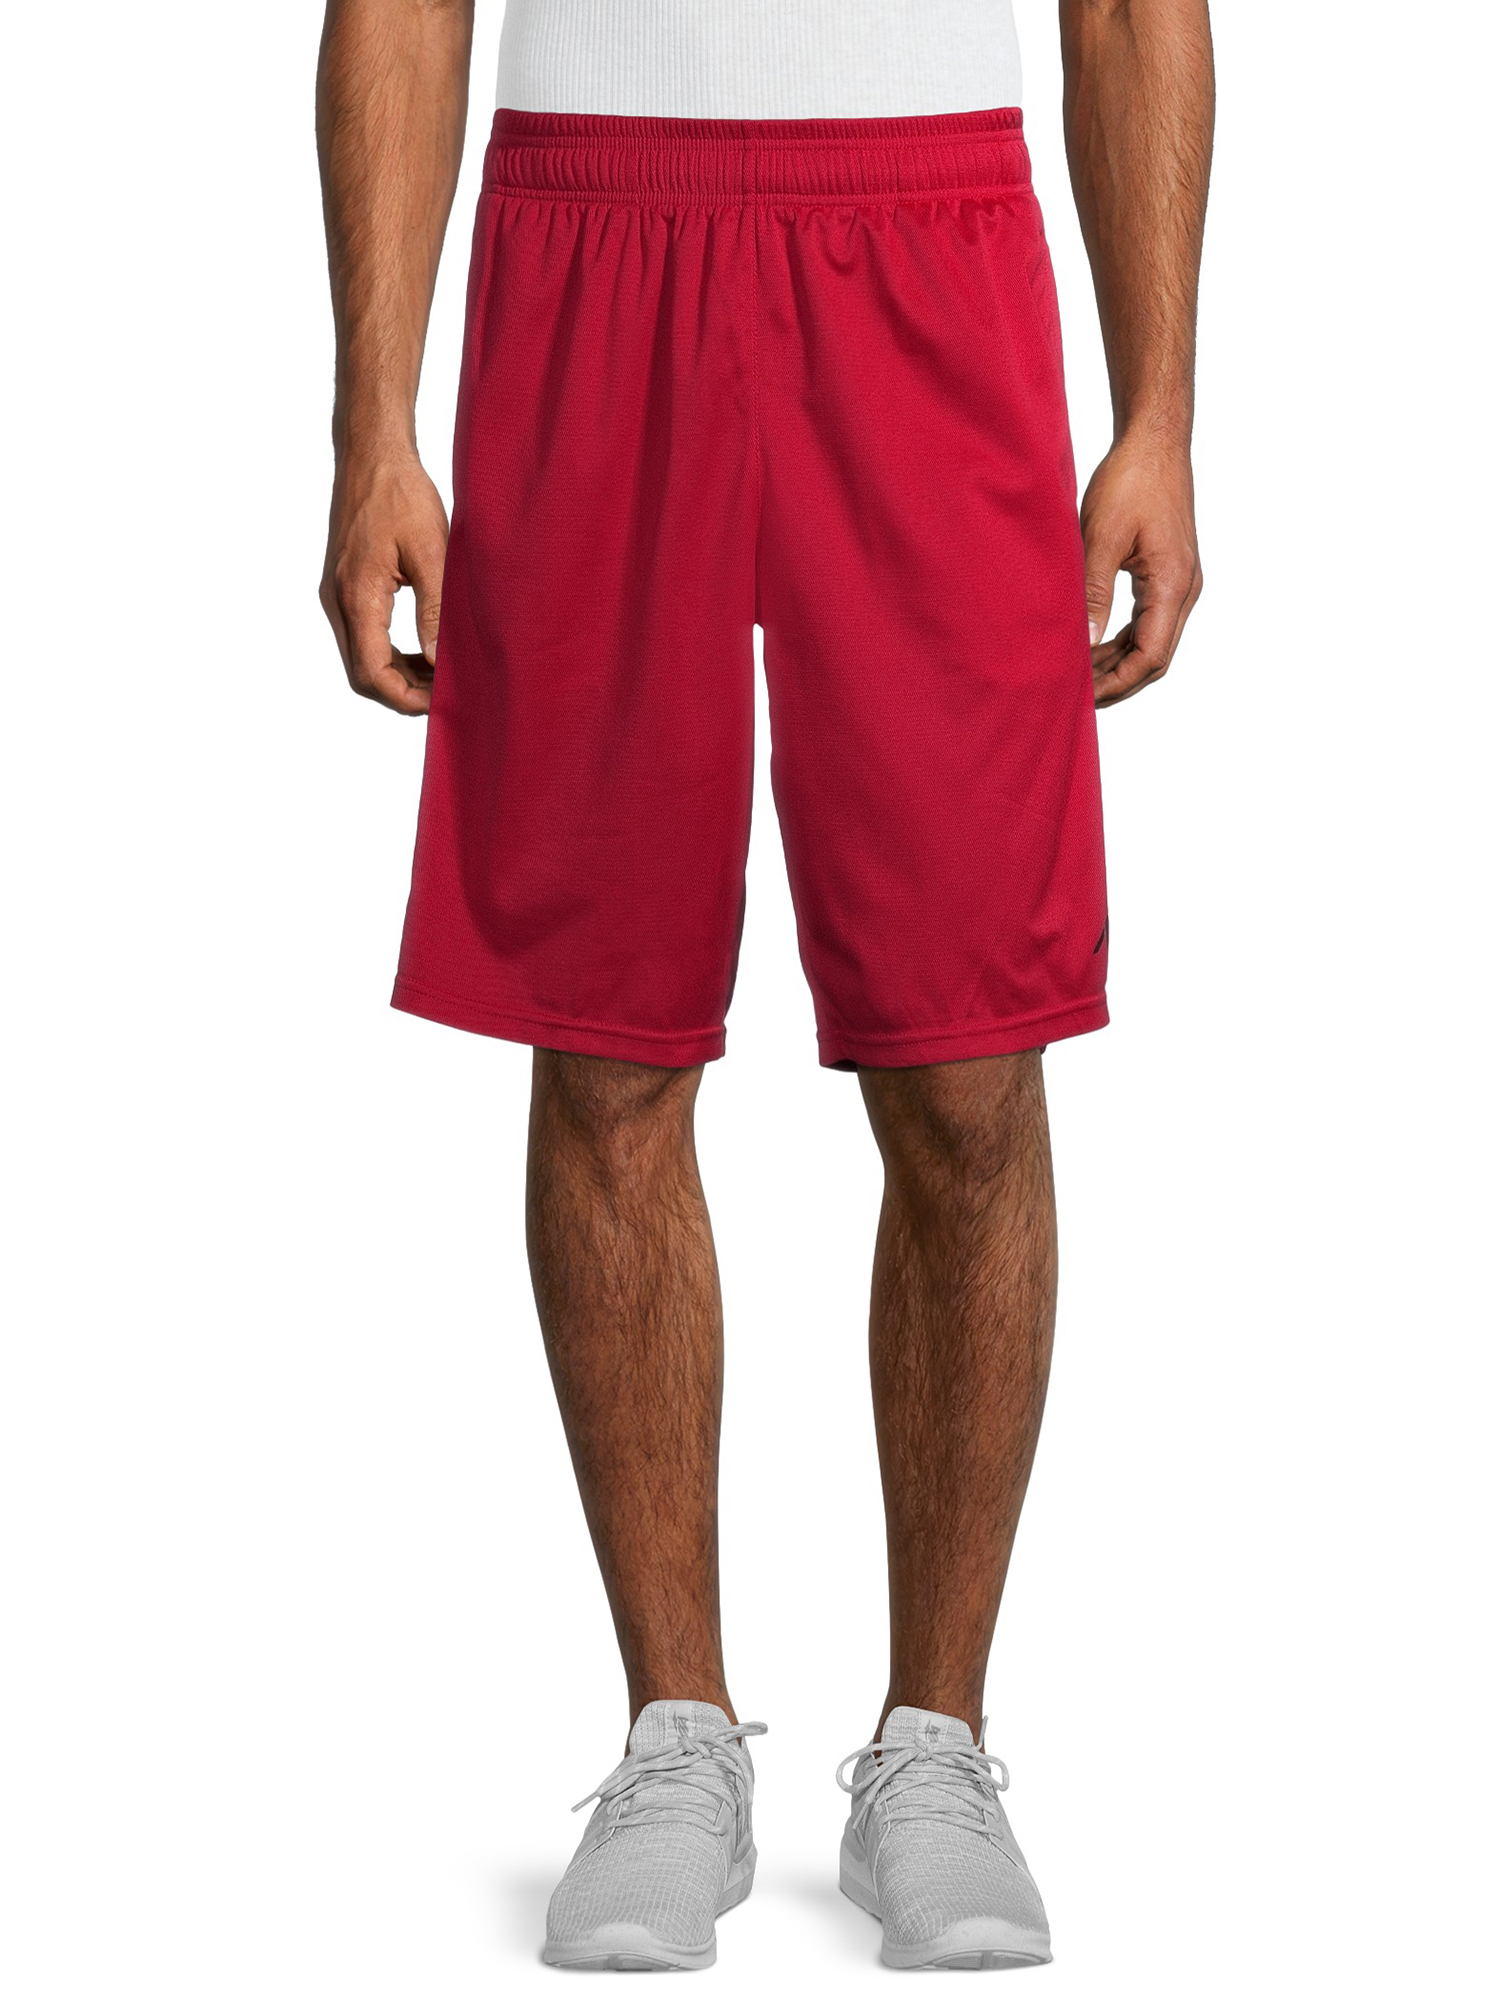 AL1VE Men's Pique Basketball Shorts - Walmart.com